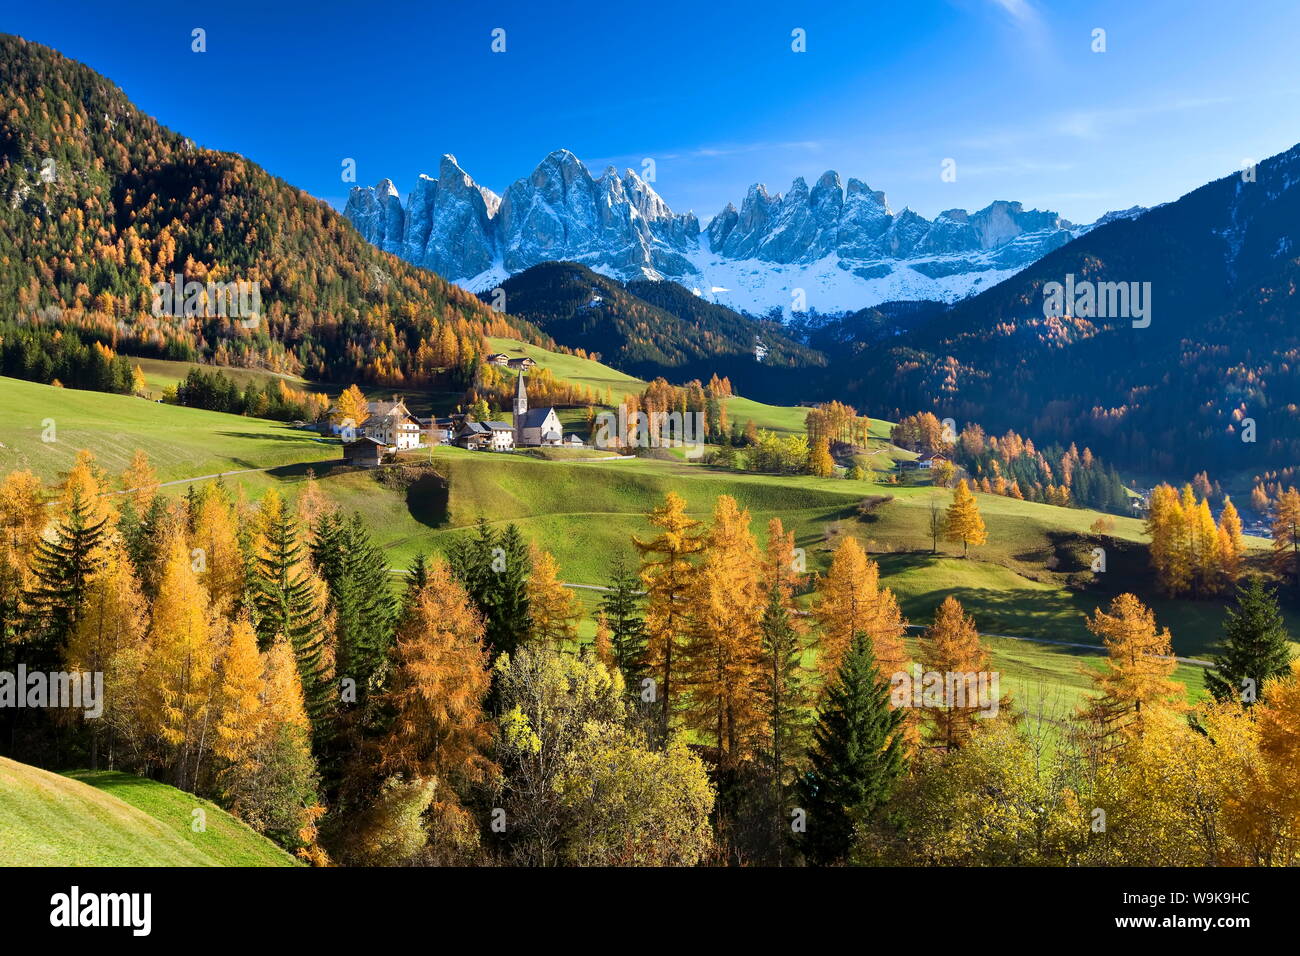 Mountains of the Geisler Gruppe/Geislerspitzen, Dolomites, Trentino-Alto Adige, Italy, Europe Stock Photo